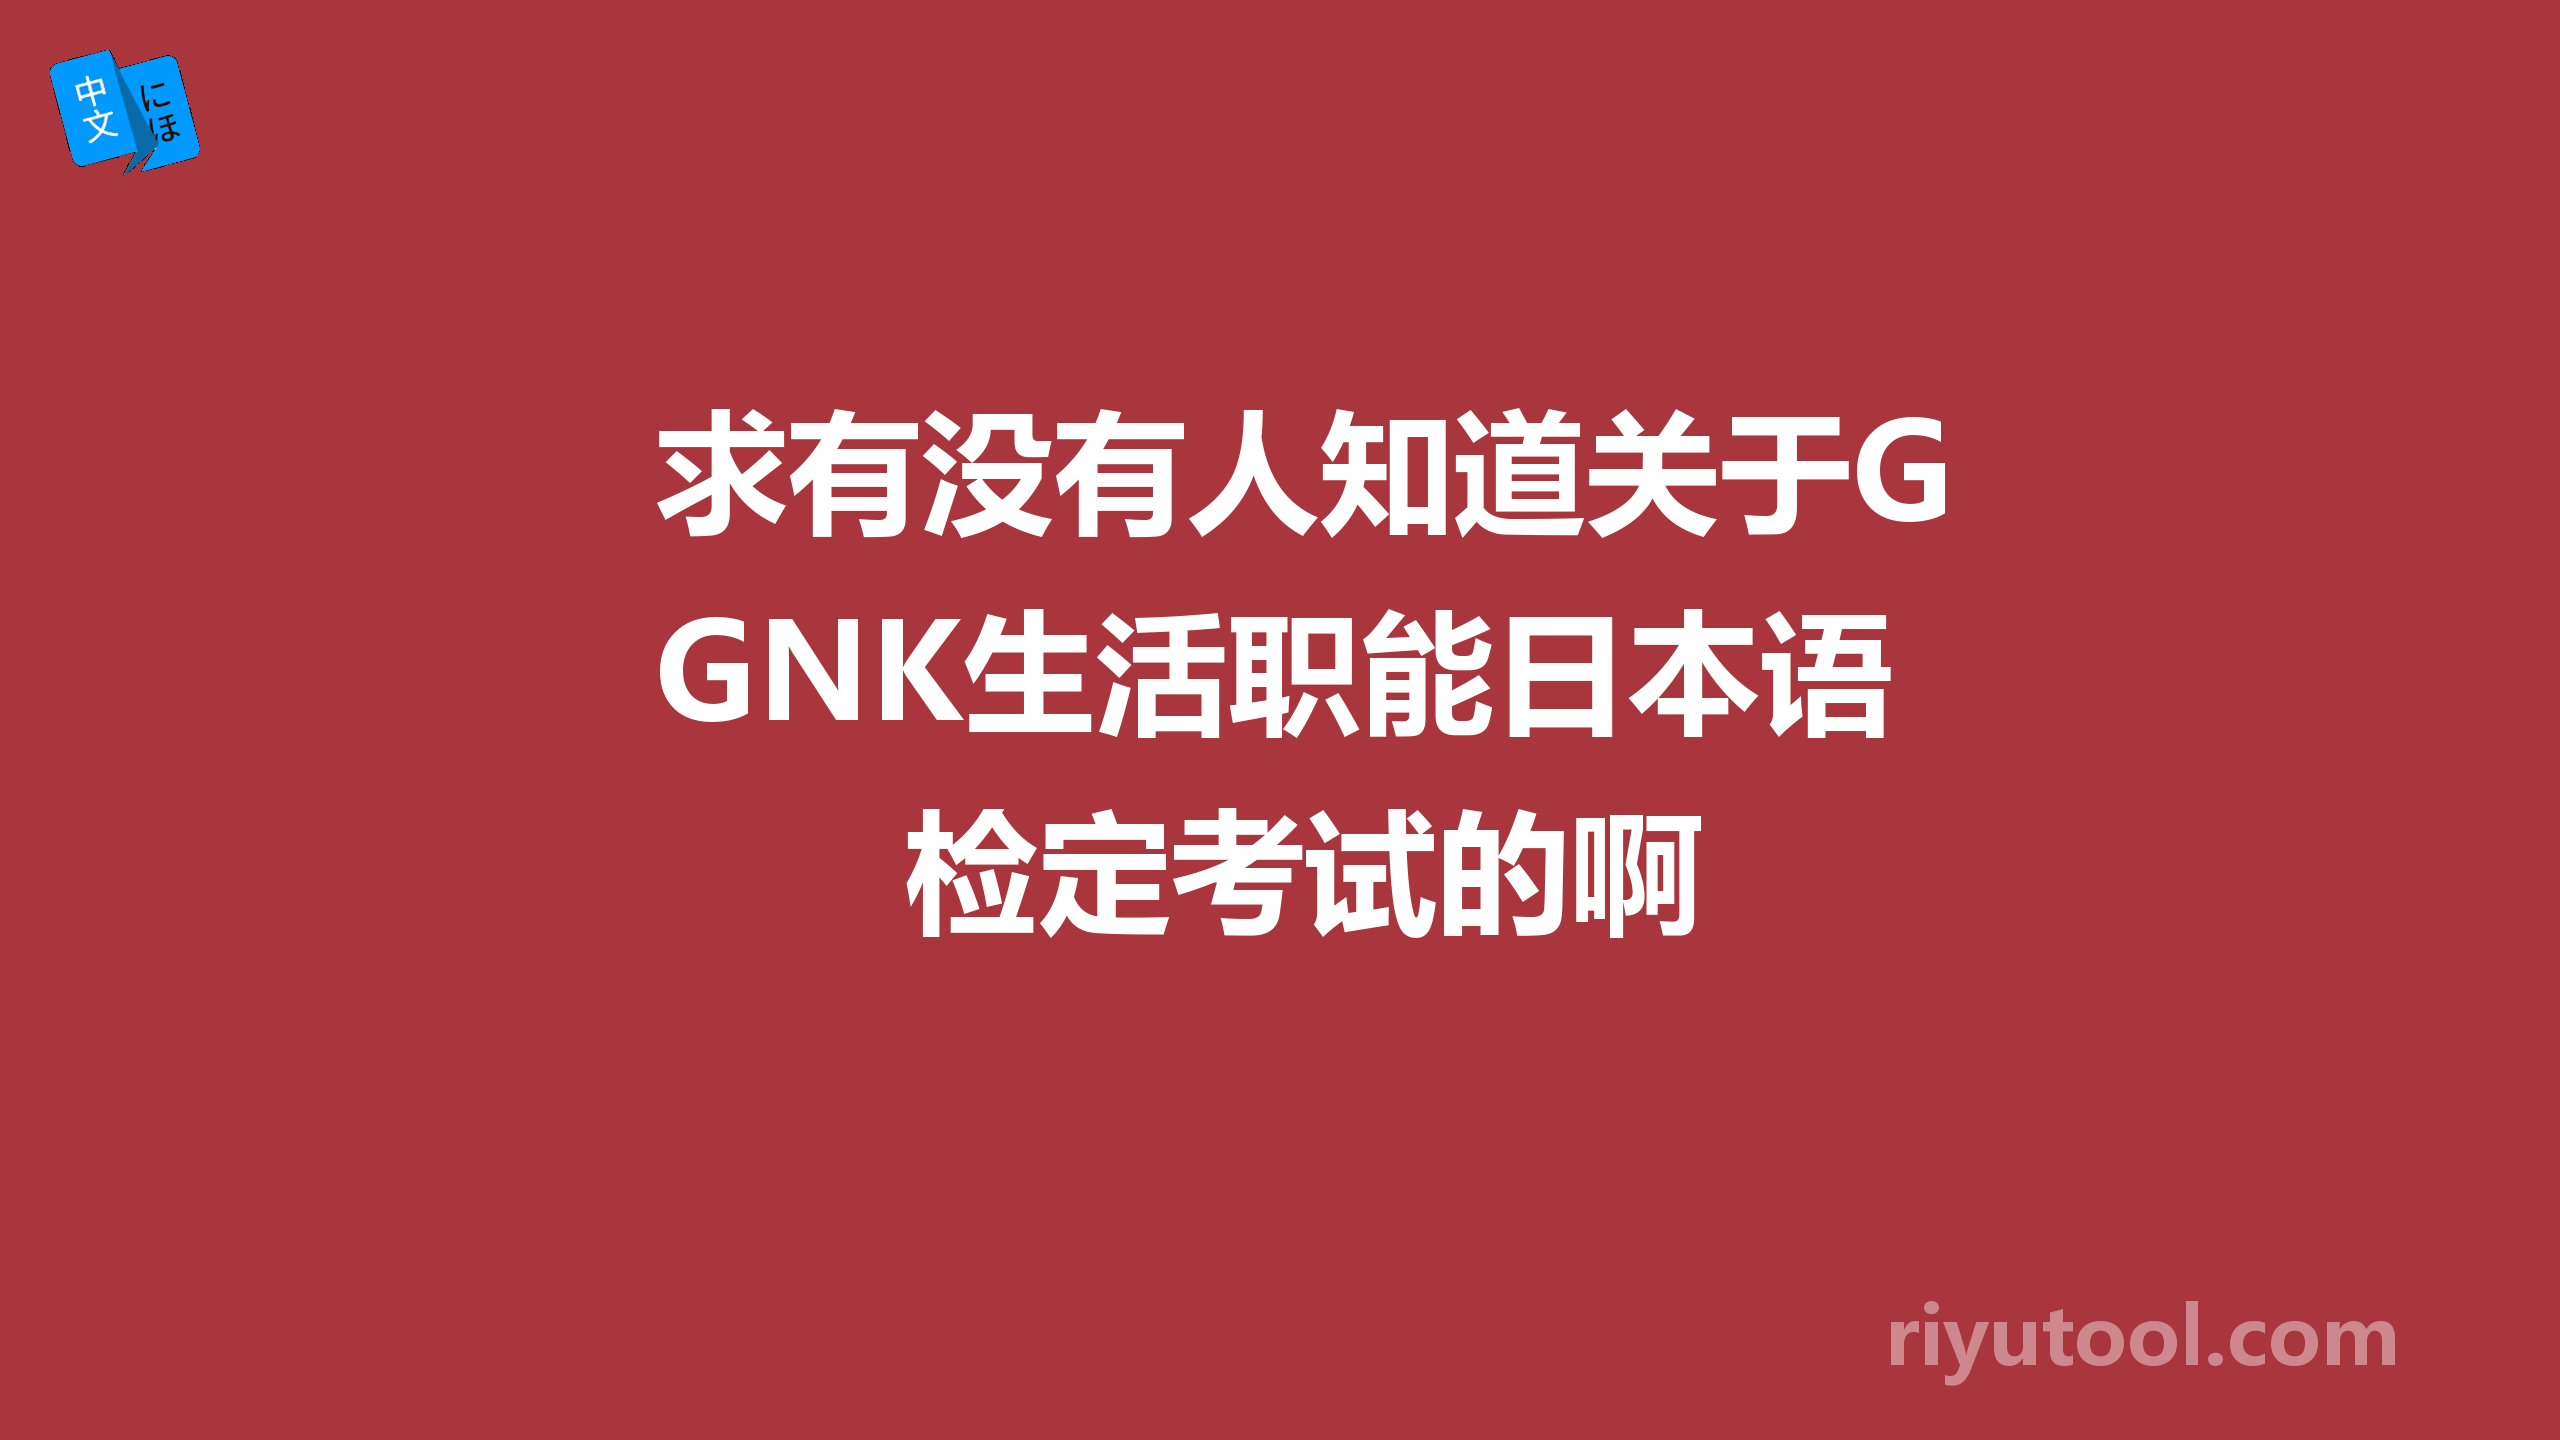 求有没有人知道关于GNK生活职能日本语检定考试的啊